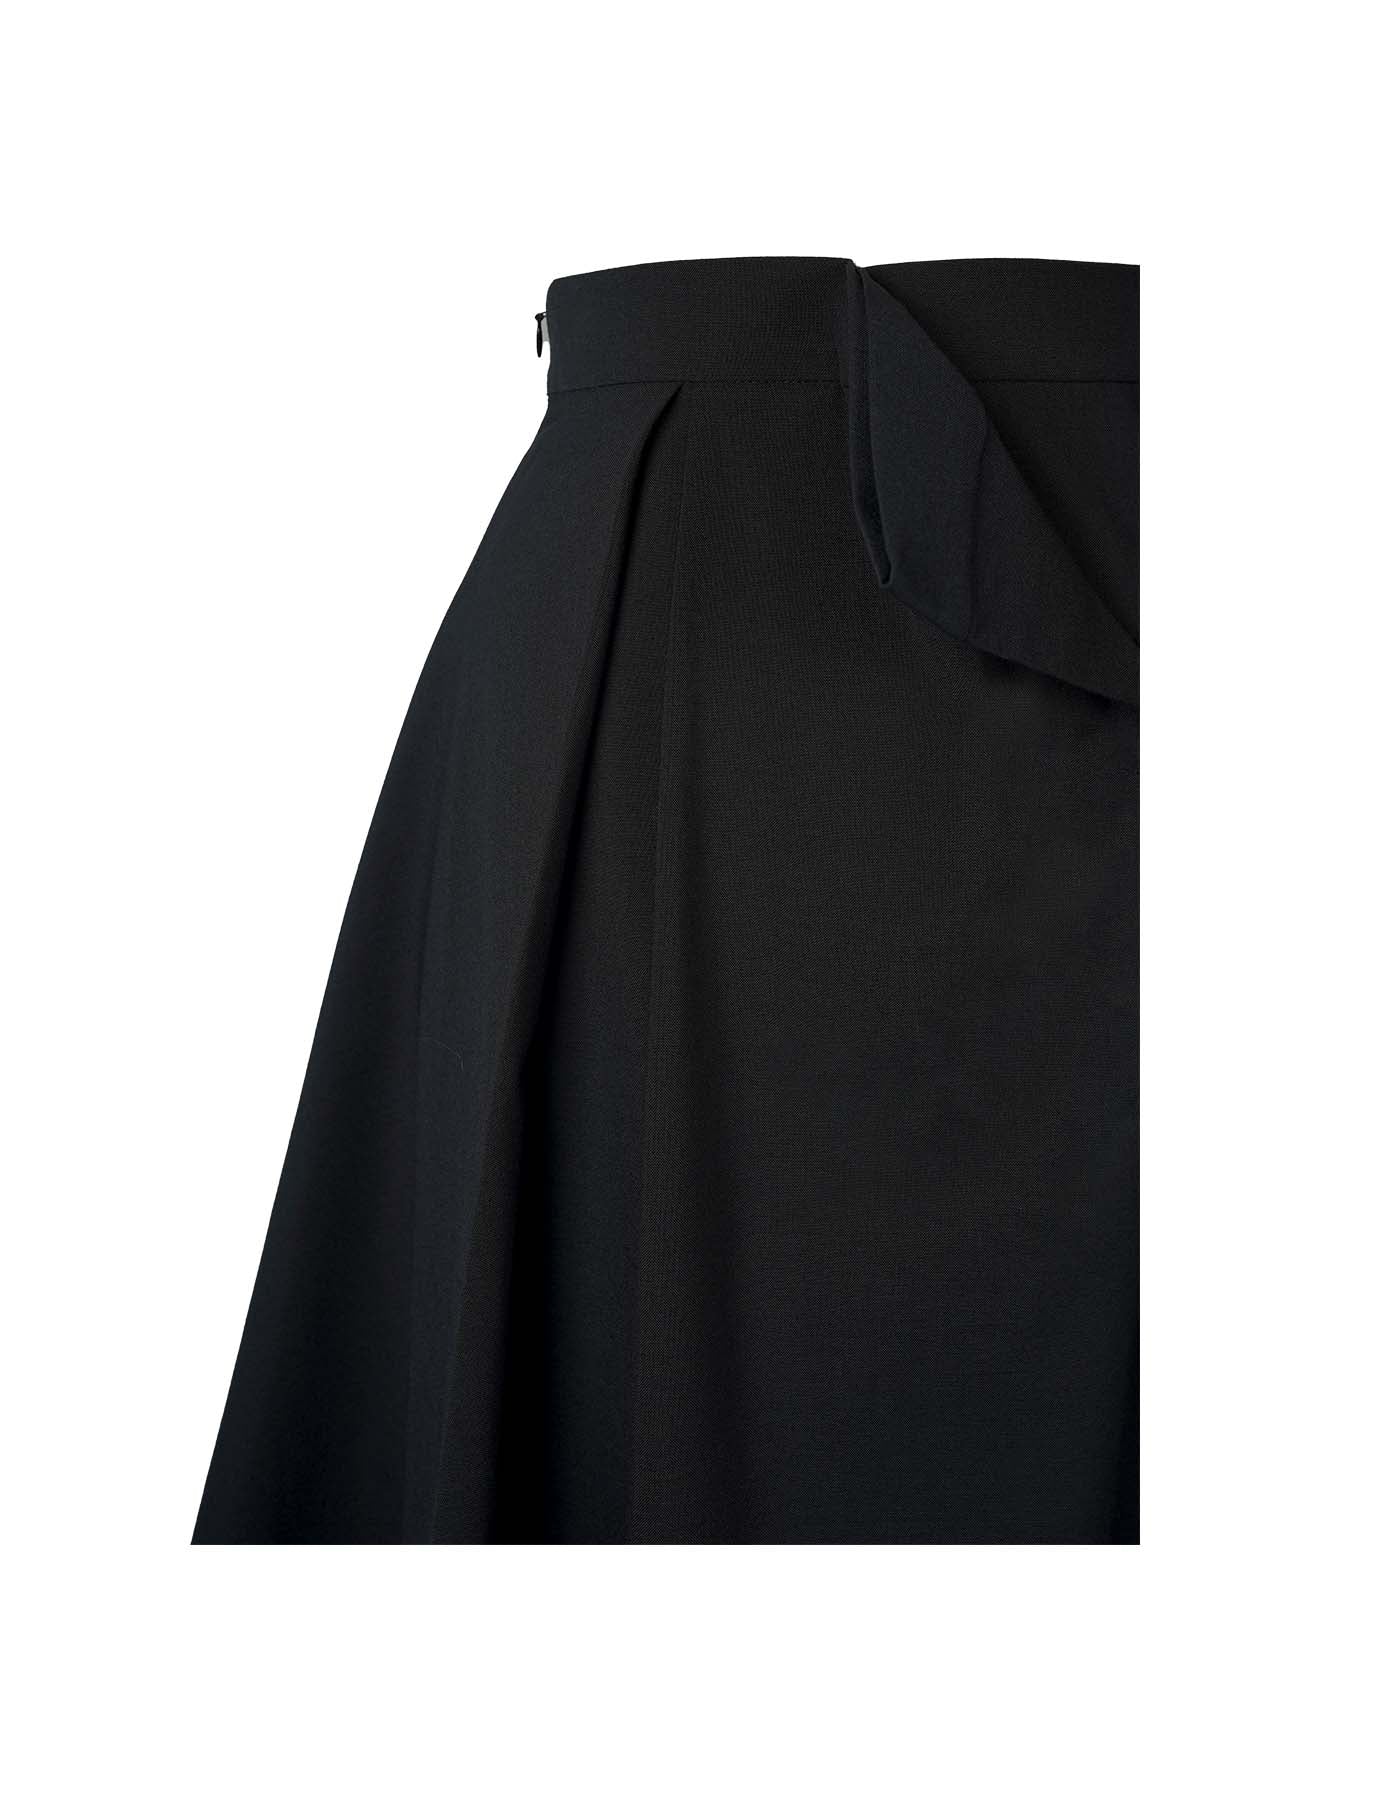 Flipping Corset A-line Skirt